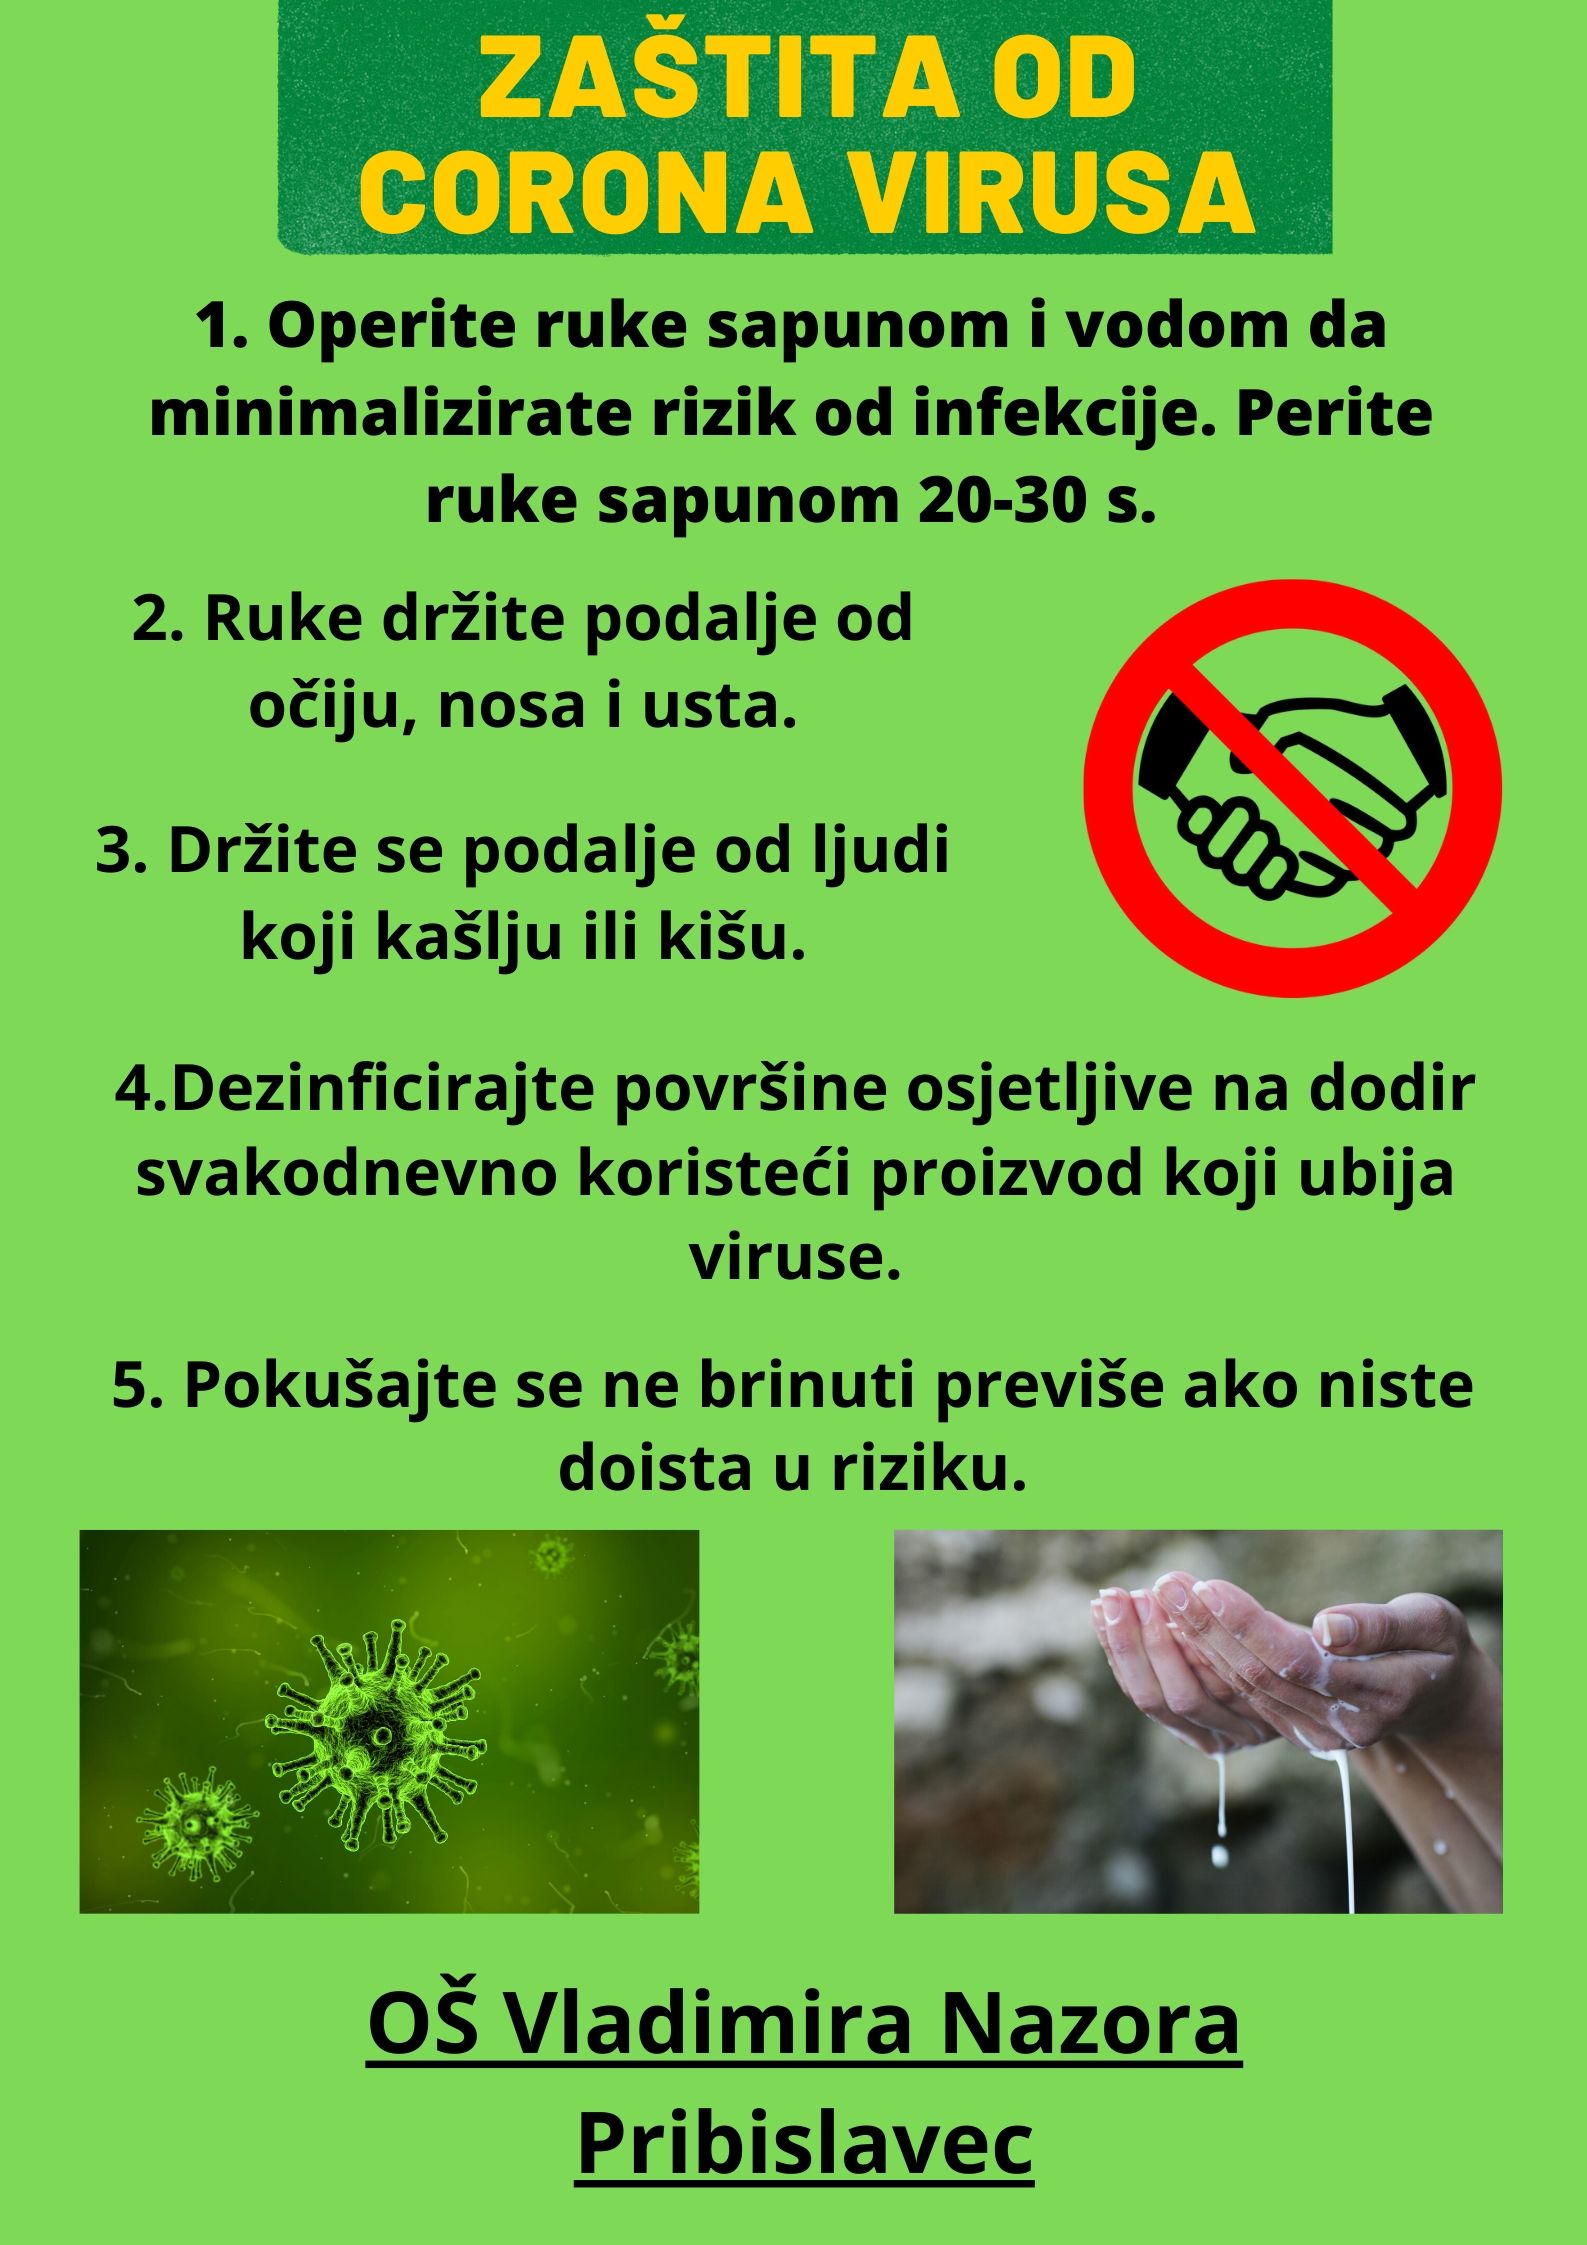 Korona virus - prevencija